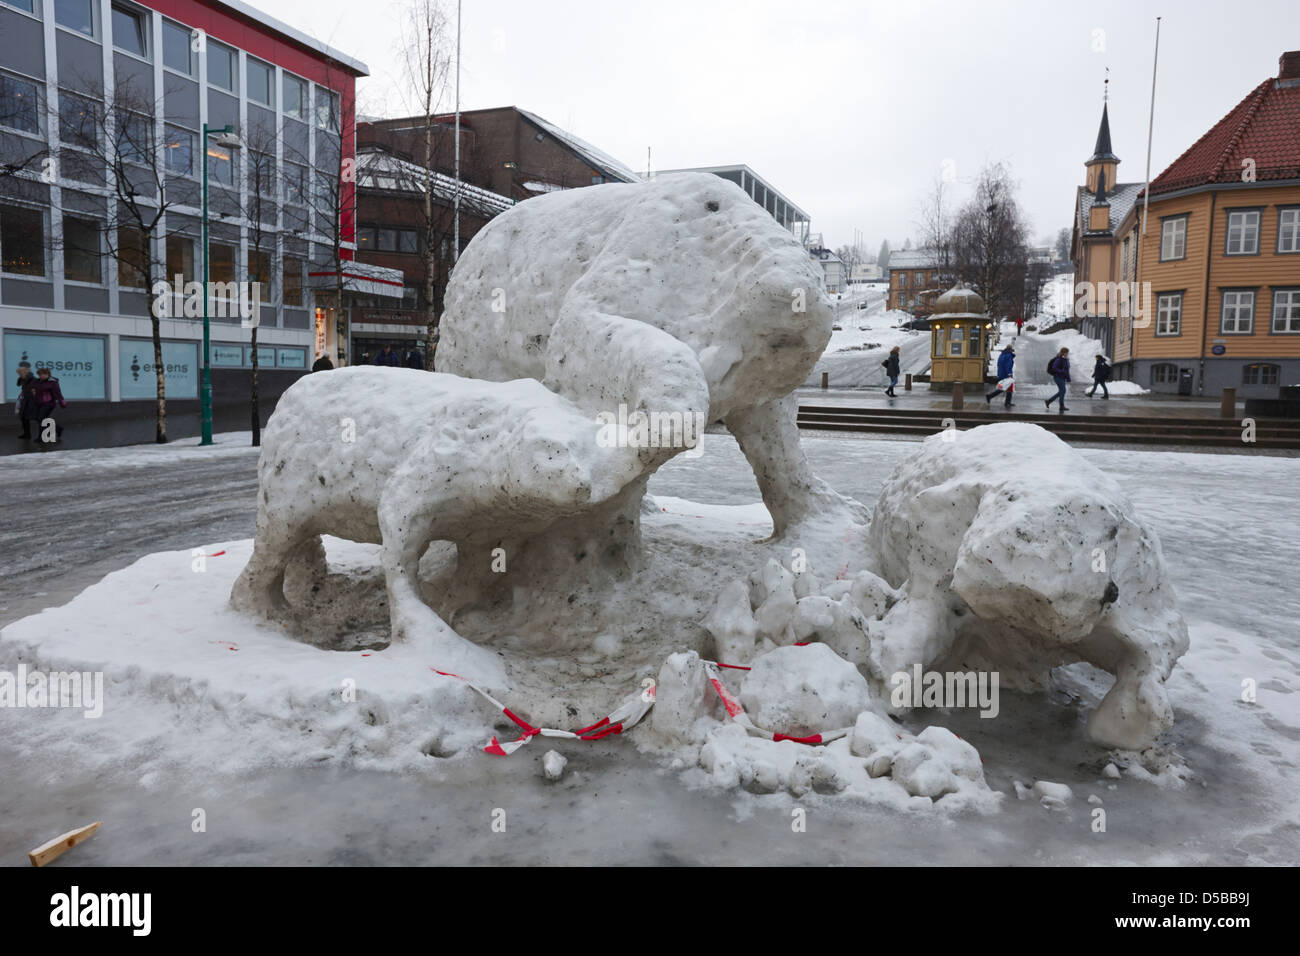 La fonte des glaces polaires sculptures dans la place de la ville de Tromso, troms Norvège europe Banque D'Images